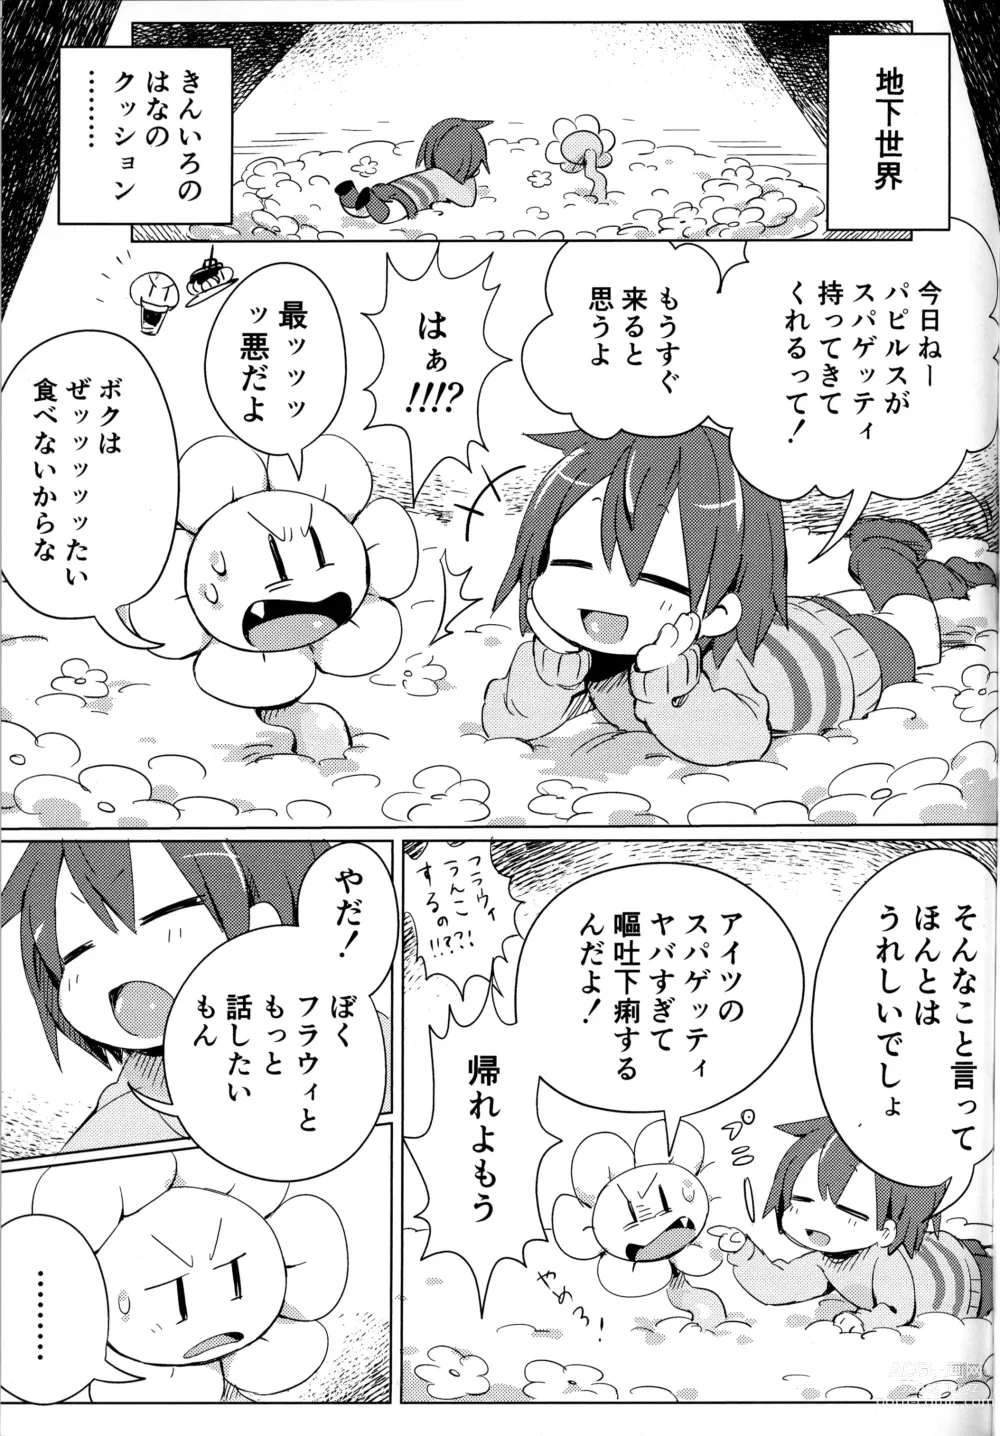 Page 4 of doujinshi Flowey, Daijoubu?